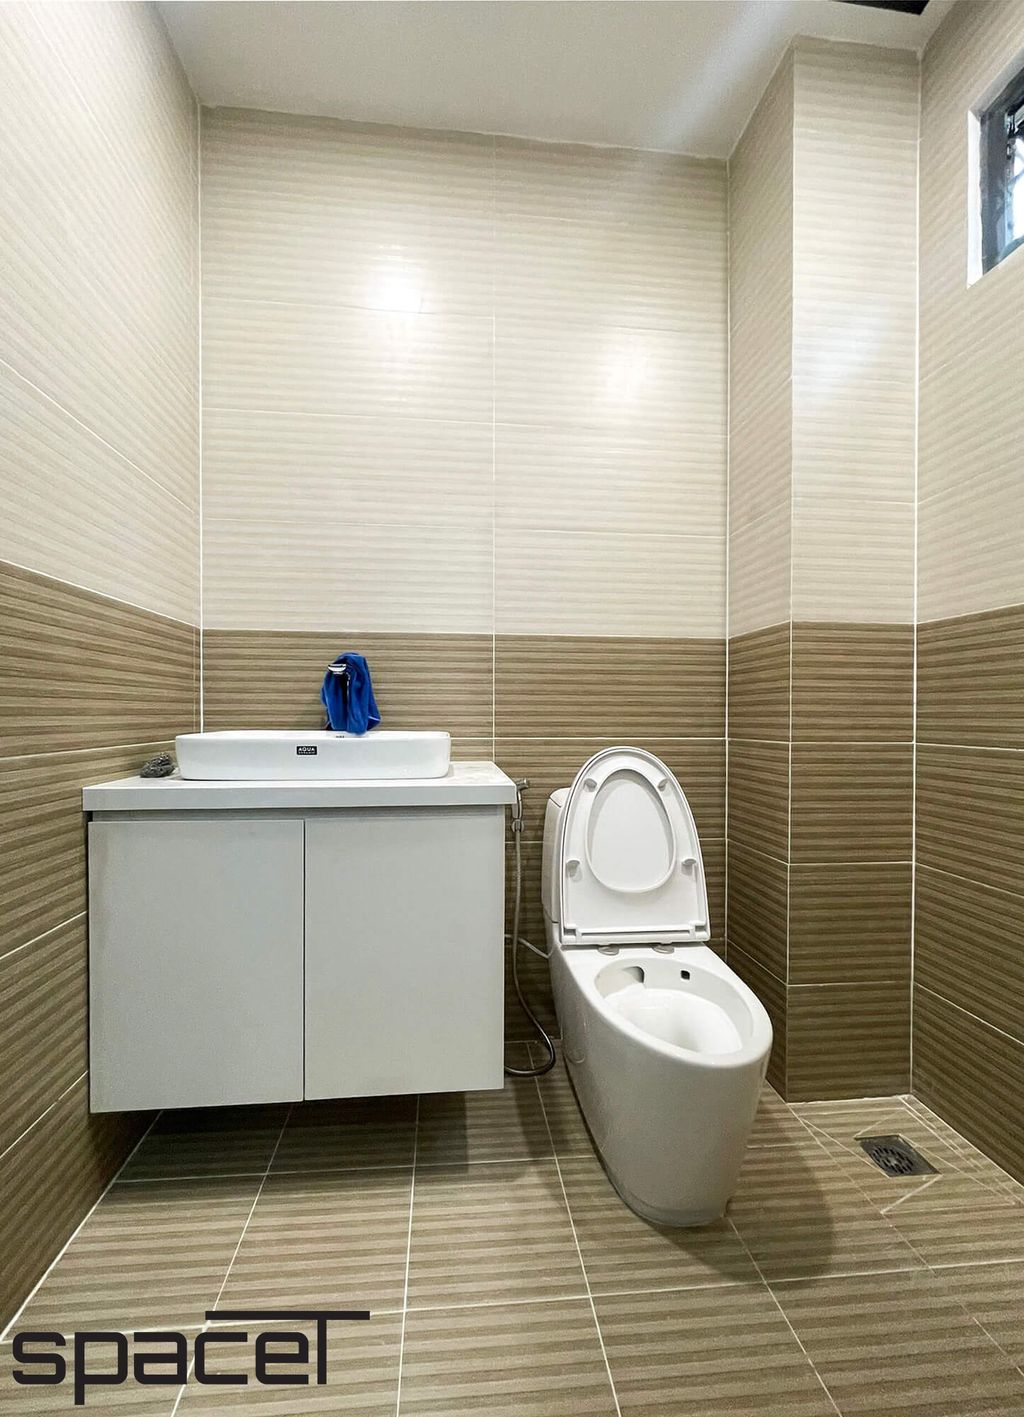 Phòng tắm - Nhà phố 100m2 tại Biên Hòa Đồng Nai - Phong cách Modern  | Space T